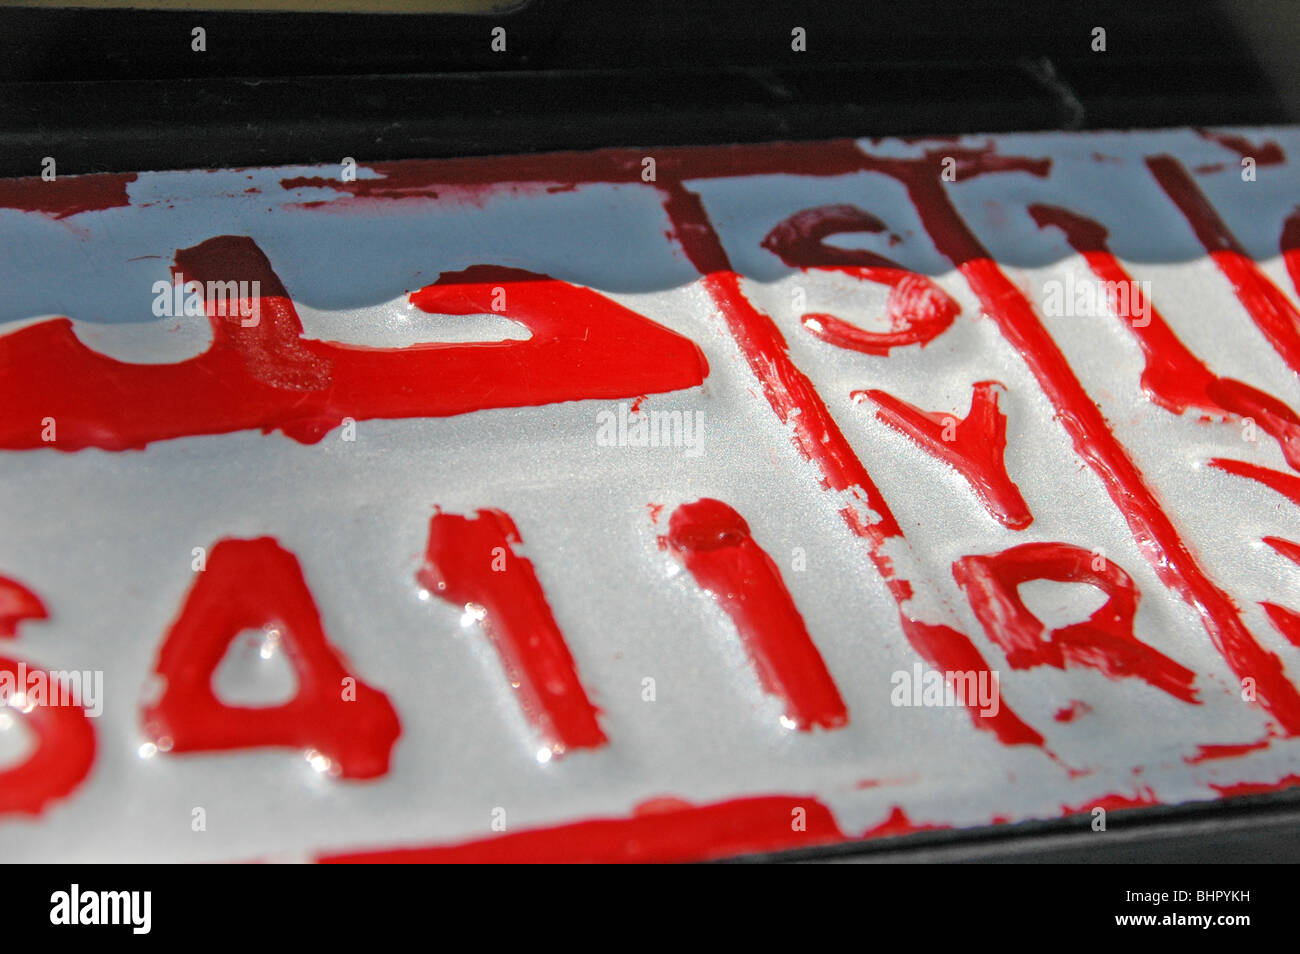 Nahaufnahme eines syrischen Autokennzeichens von einem Fahrzeug im nördlichen Teil des Landes nahe Aleppo, Syrien. Stockfoto